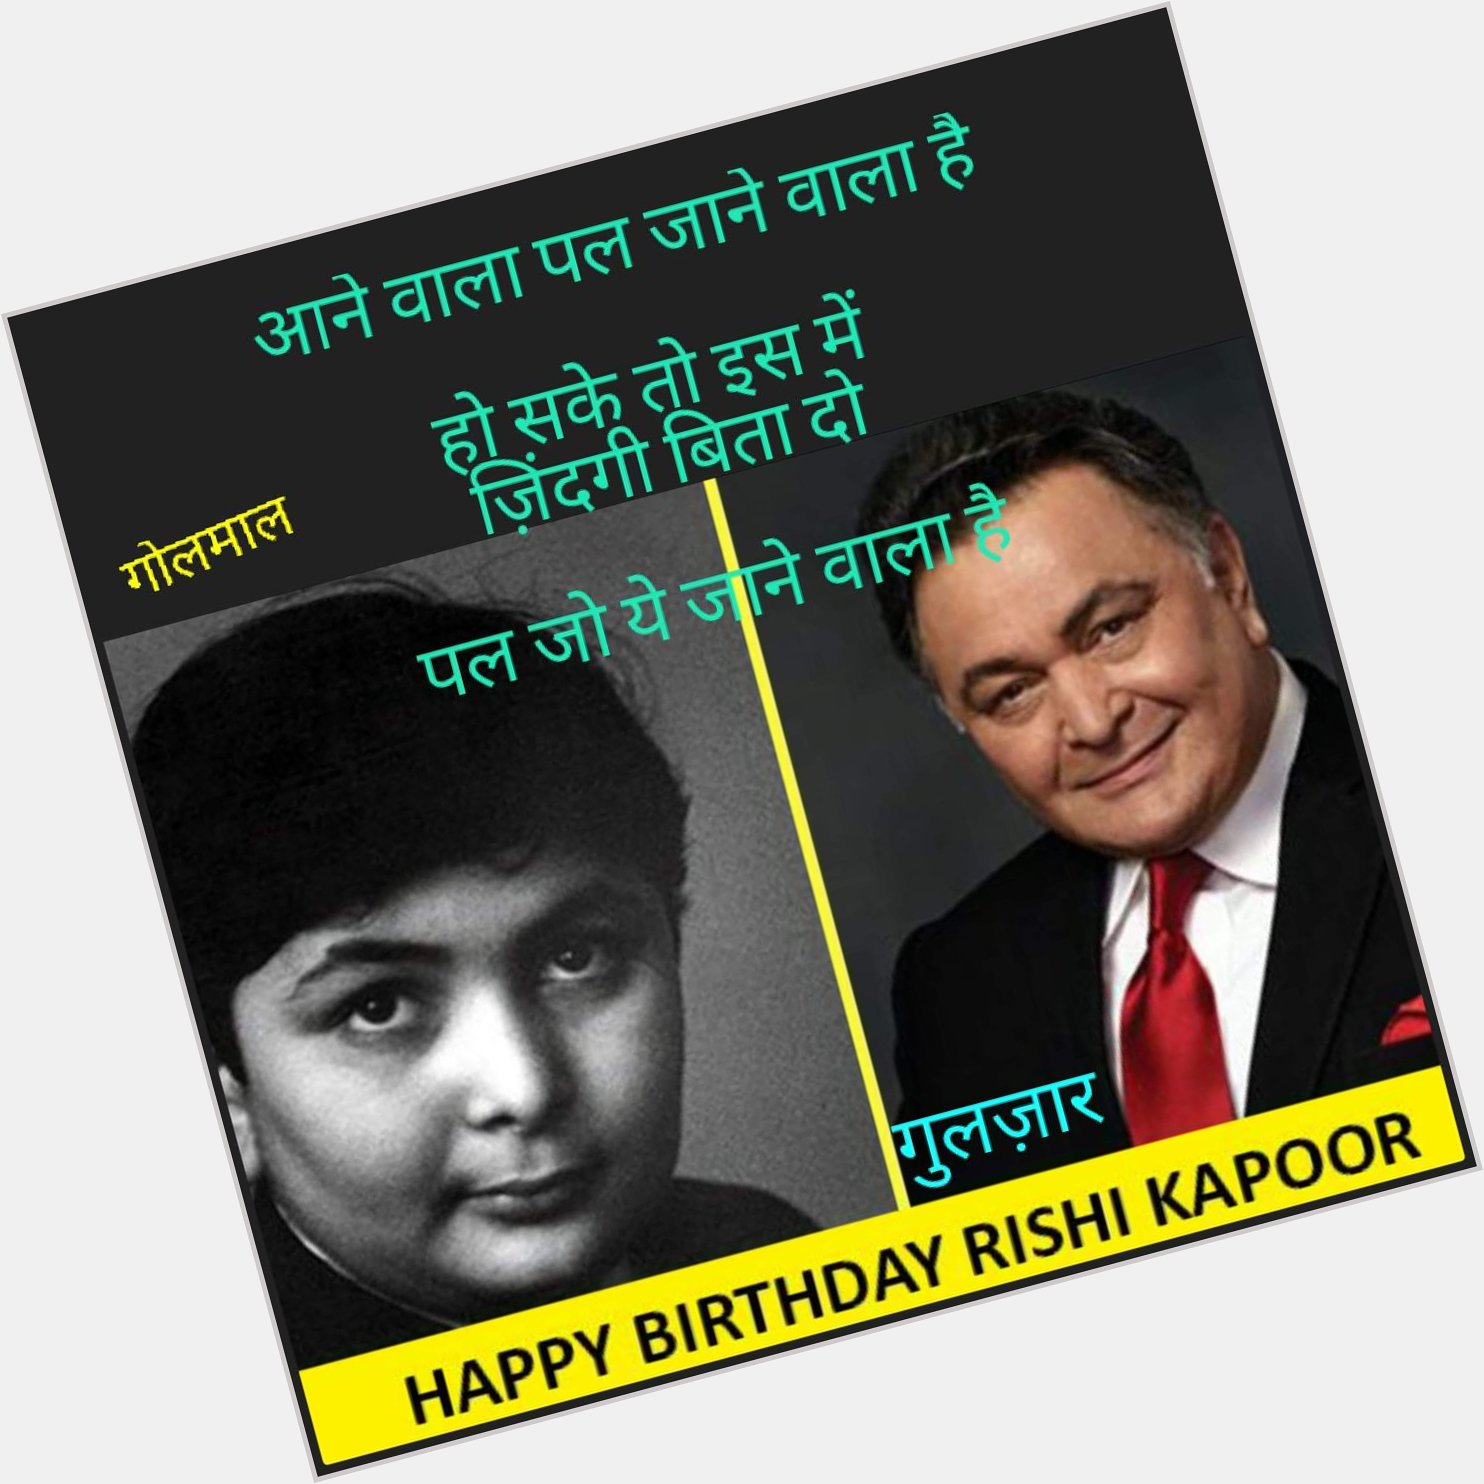  Happy Birthday Rishi Kapoor ji 